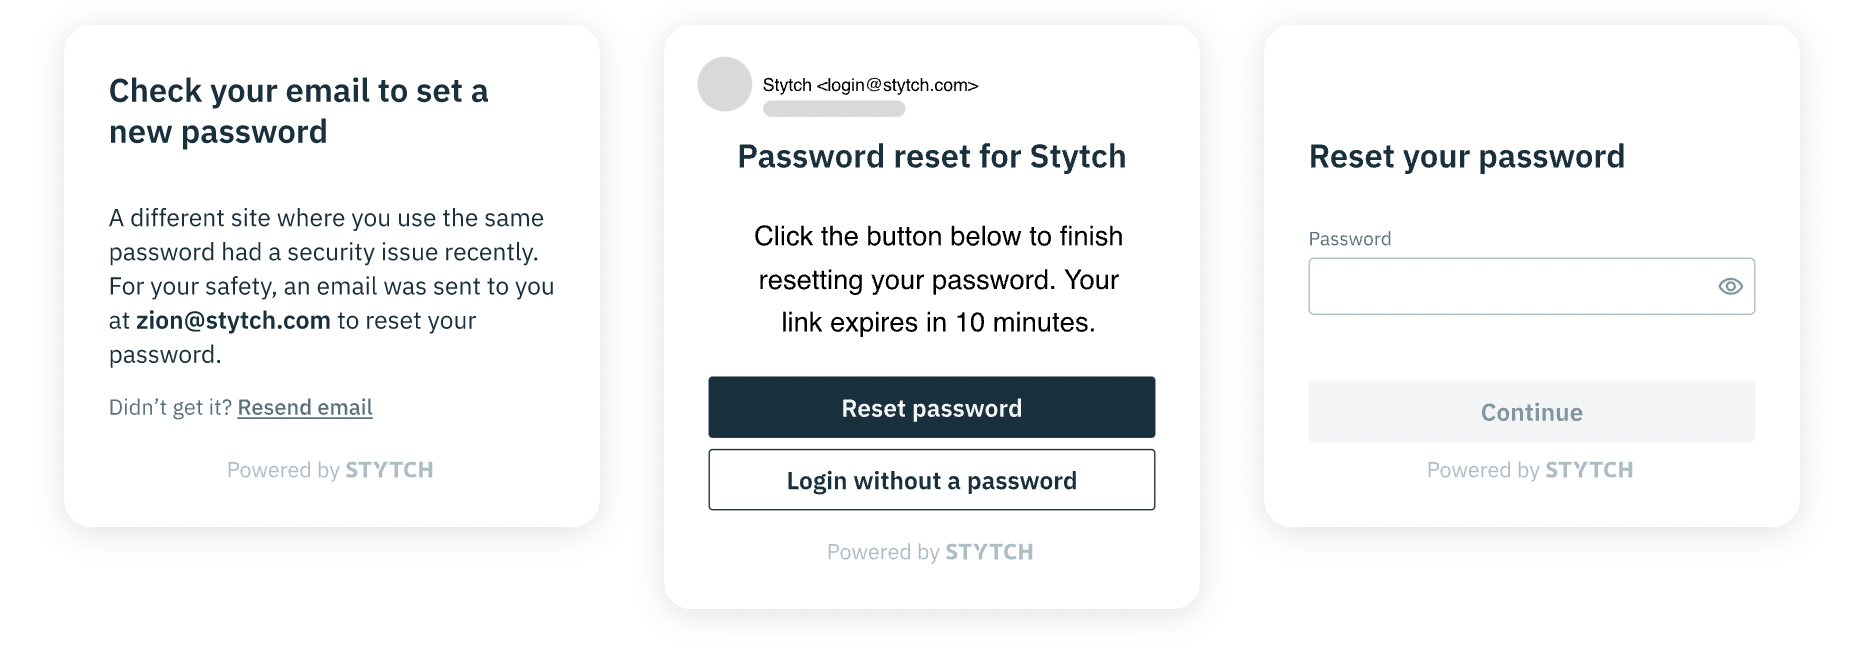 A screenshot of Stytch's own password reset flow